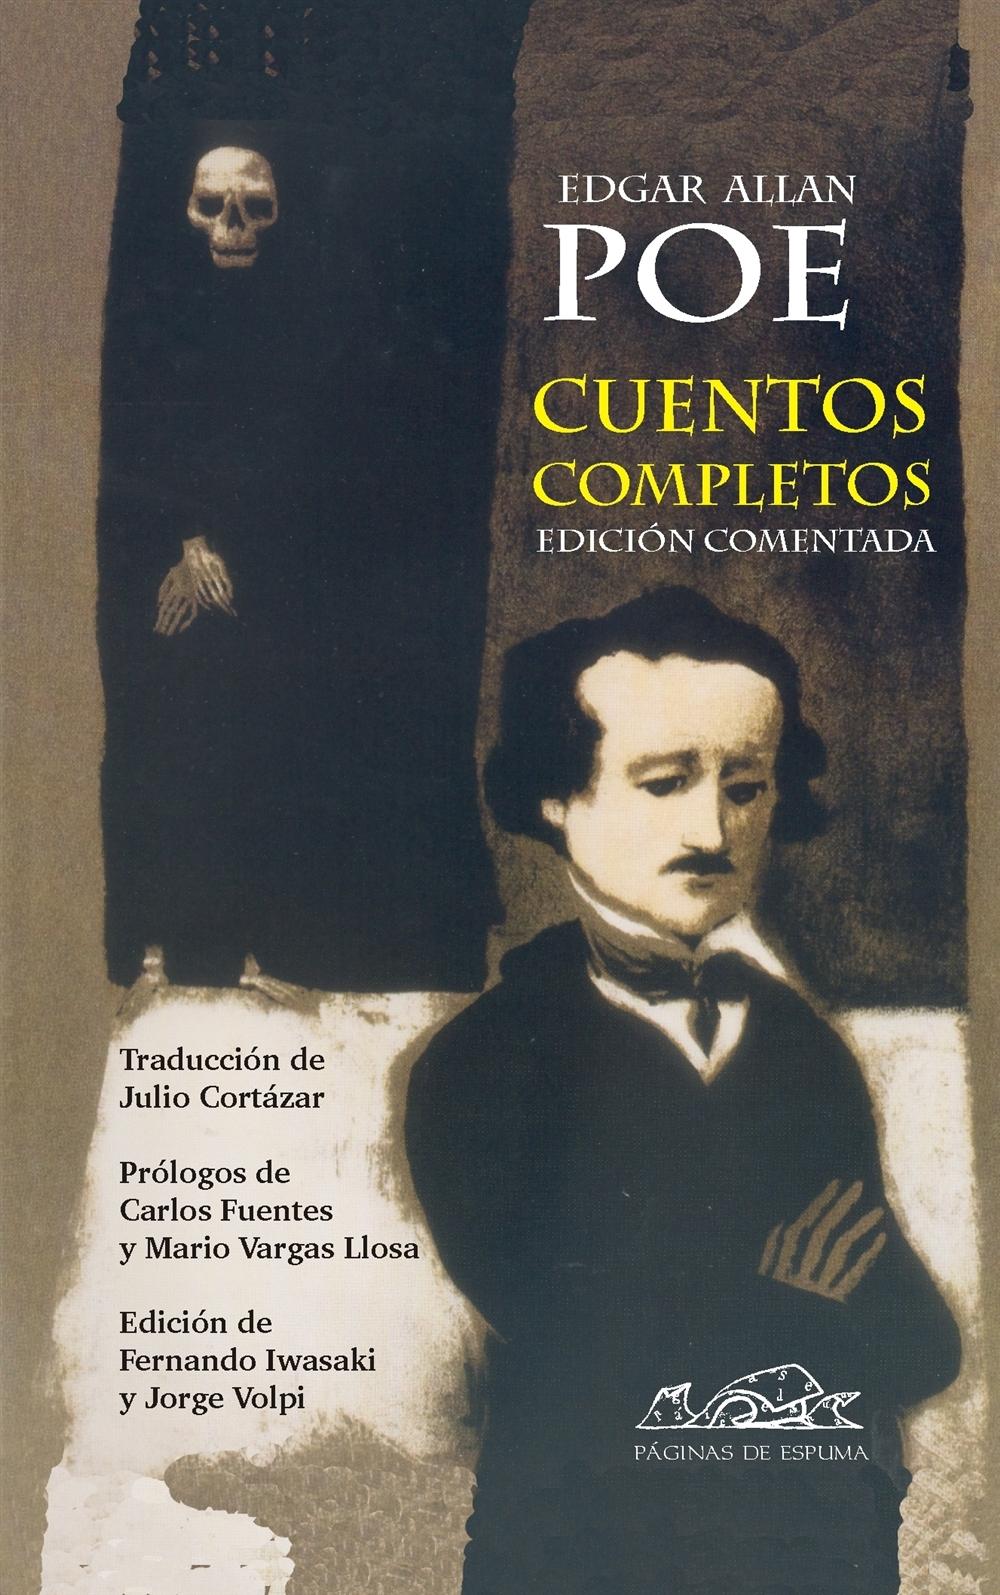 Cuentos completos "(Edgar Allan Poe) - Edición comentada"